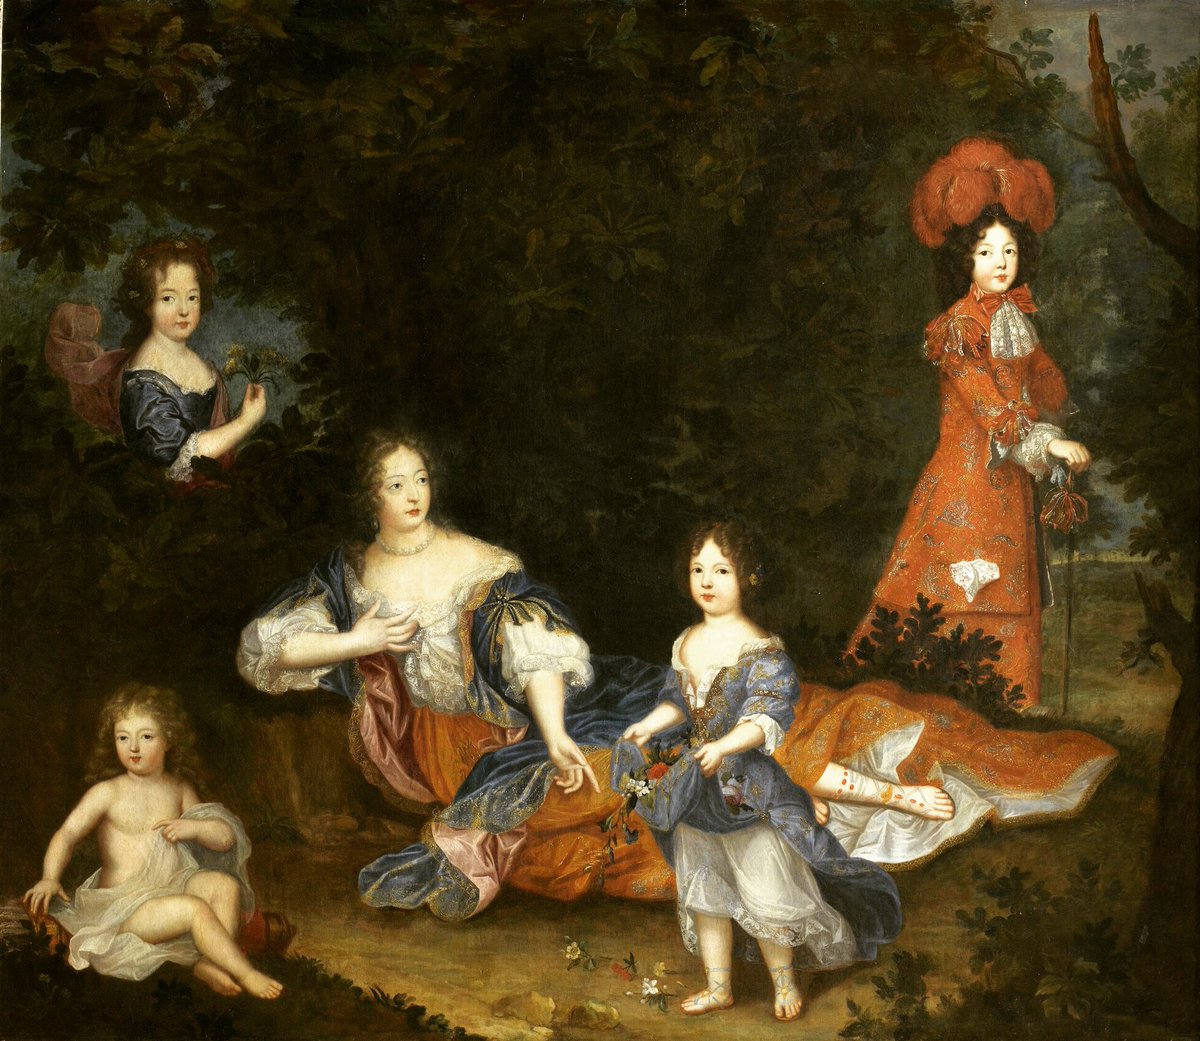 Françoise-Athénaïs de Rochechouart de Mortemart, Marquise de Montespan, with four of her children: Louis Auguste, Duke of Maine (1670-1736), Louis César, Count of Vexin (1672-1683) Louise Françoise de Bourbon (1673-1743) and Louise Marie Anne de Bourbon (1676-1681).